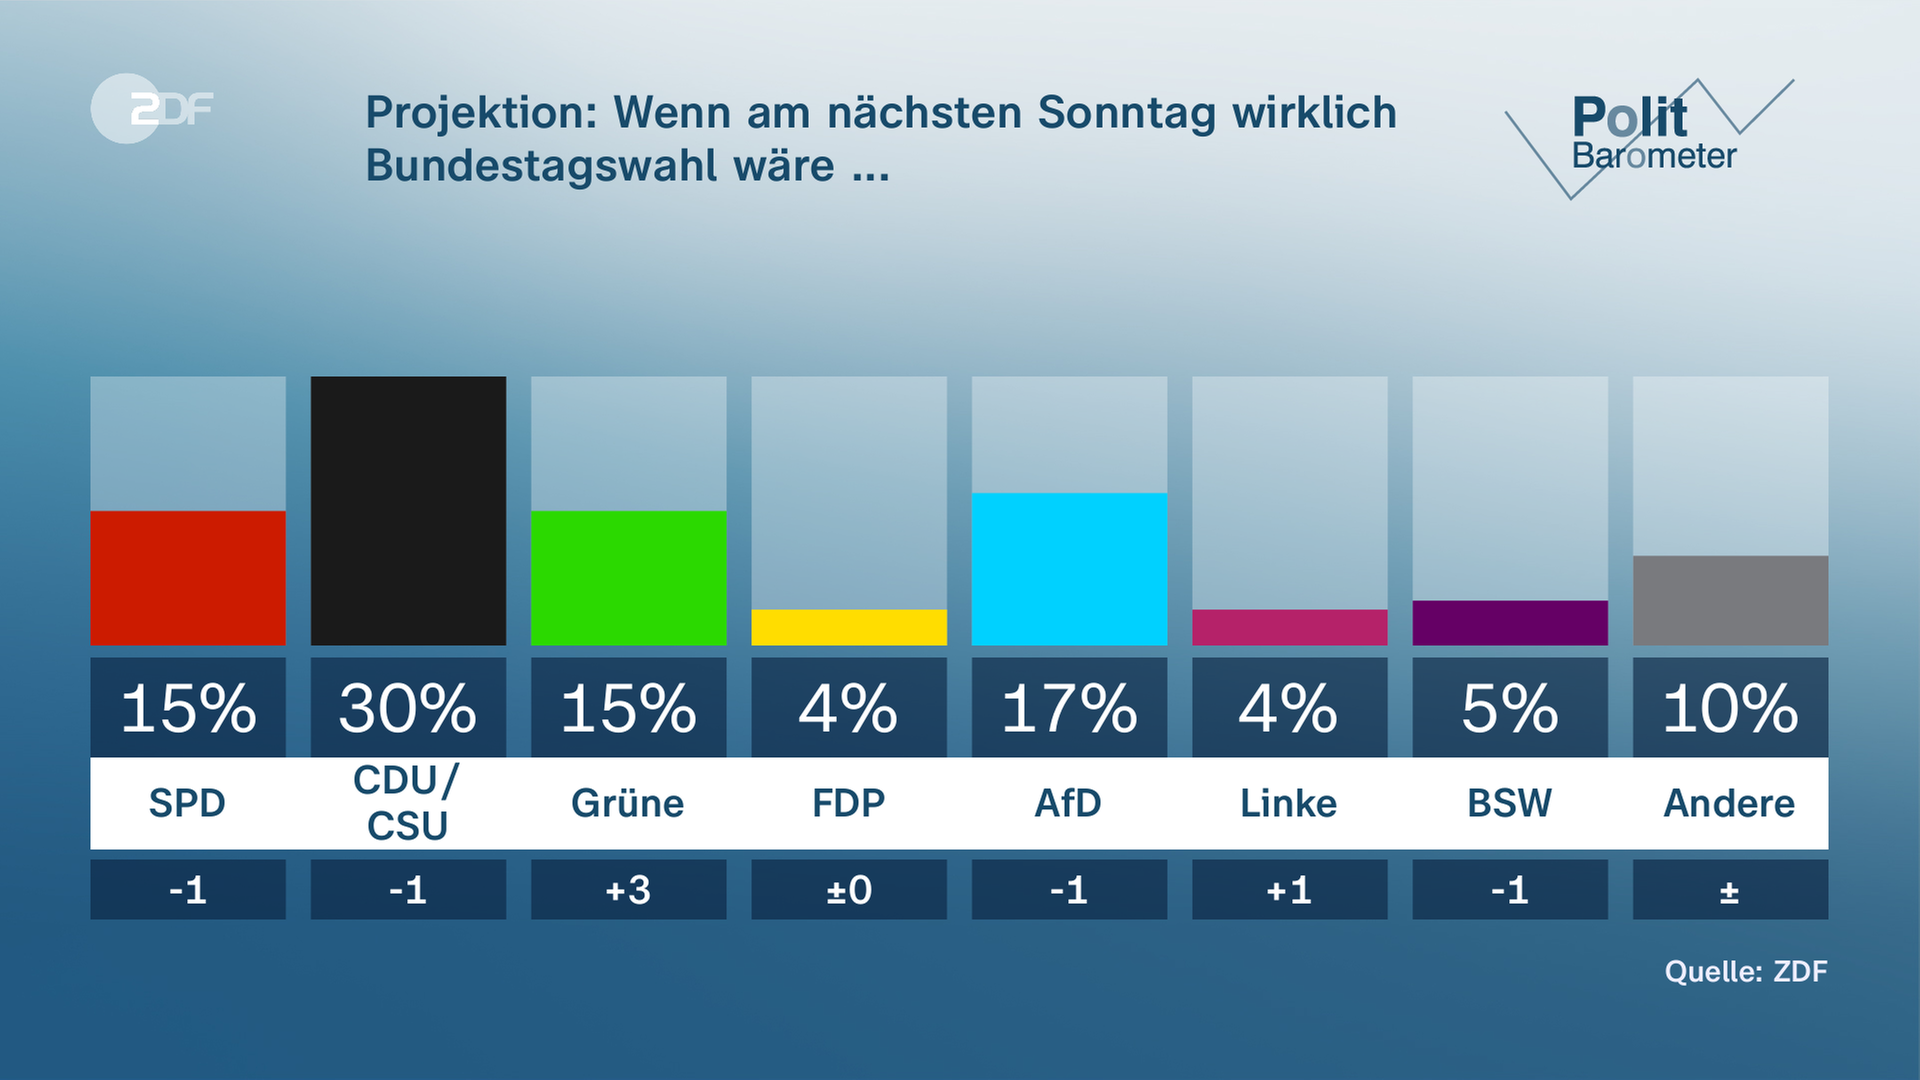 ZDF-Politbarometer Grafik zur Frage: Projektion: Wenn am nächsten Sonntag wirklich Bundestasgwahl wäre ...